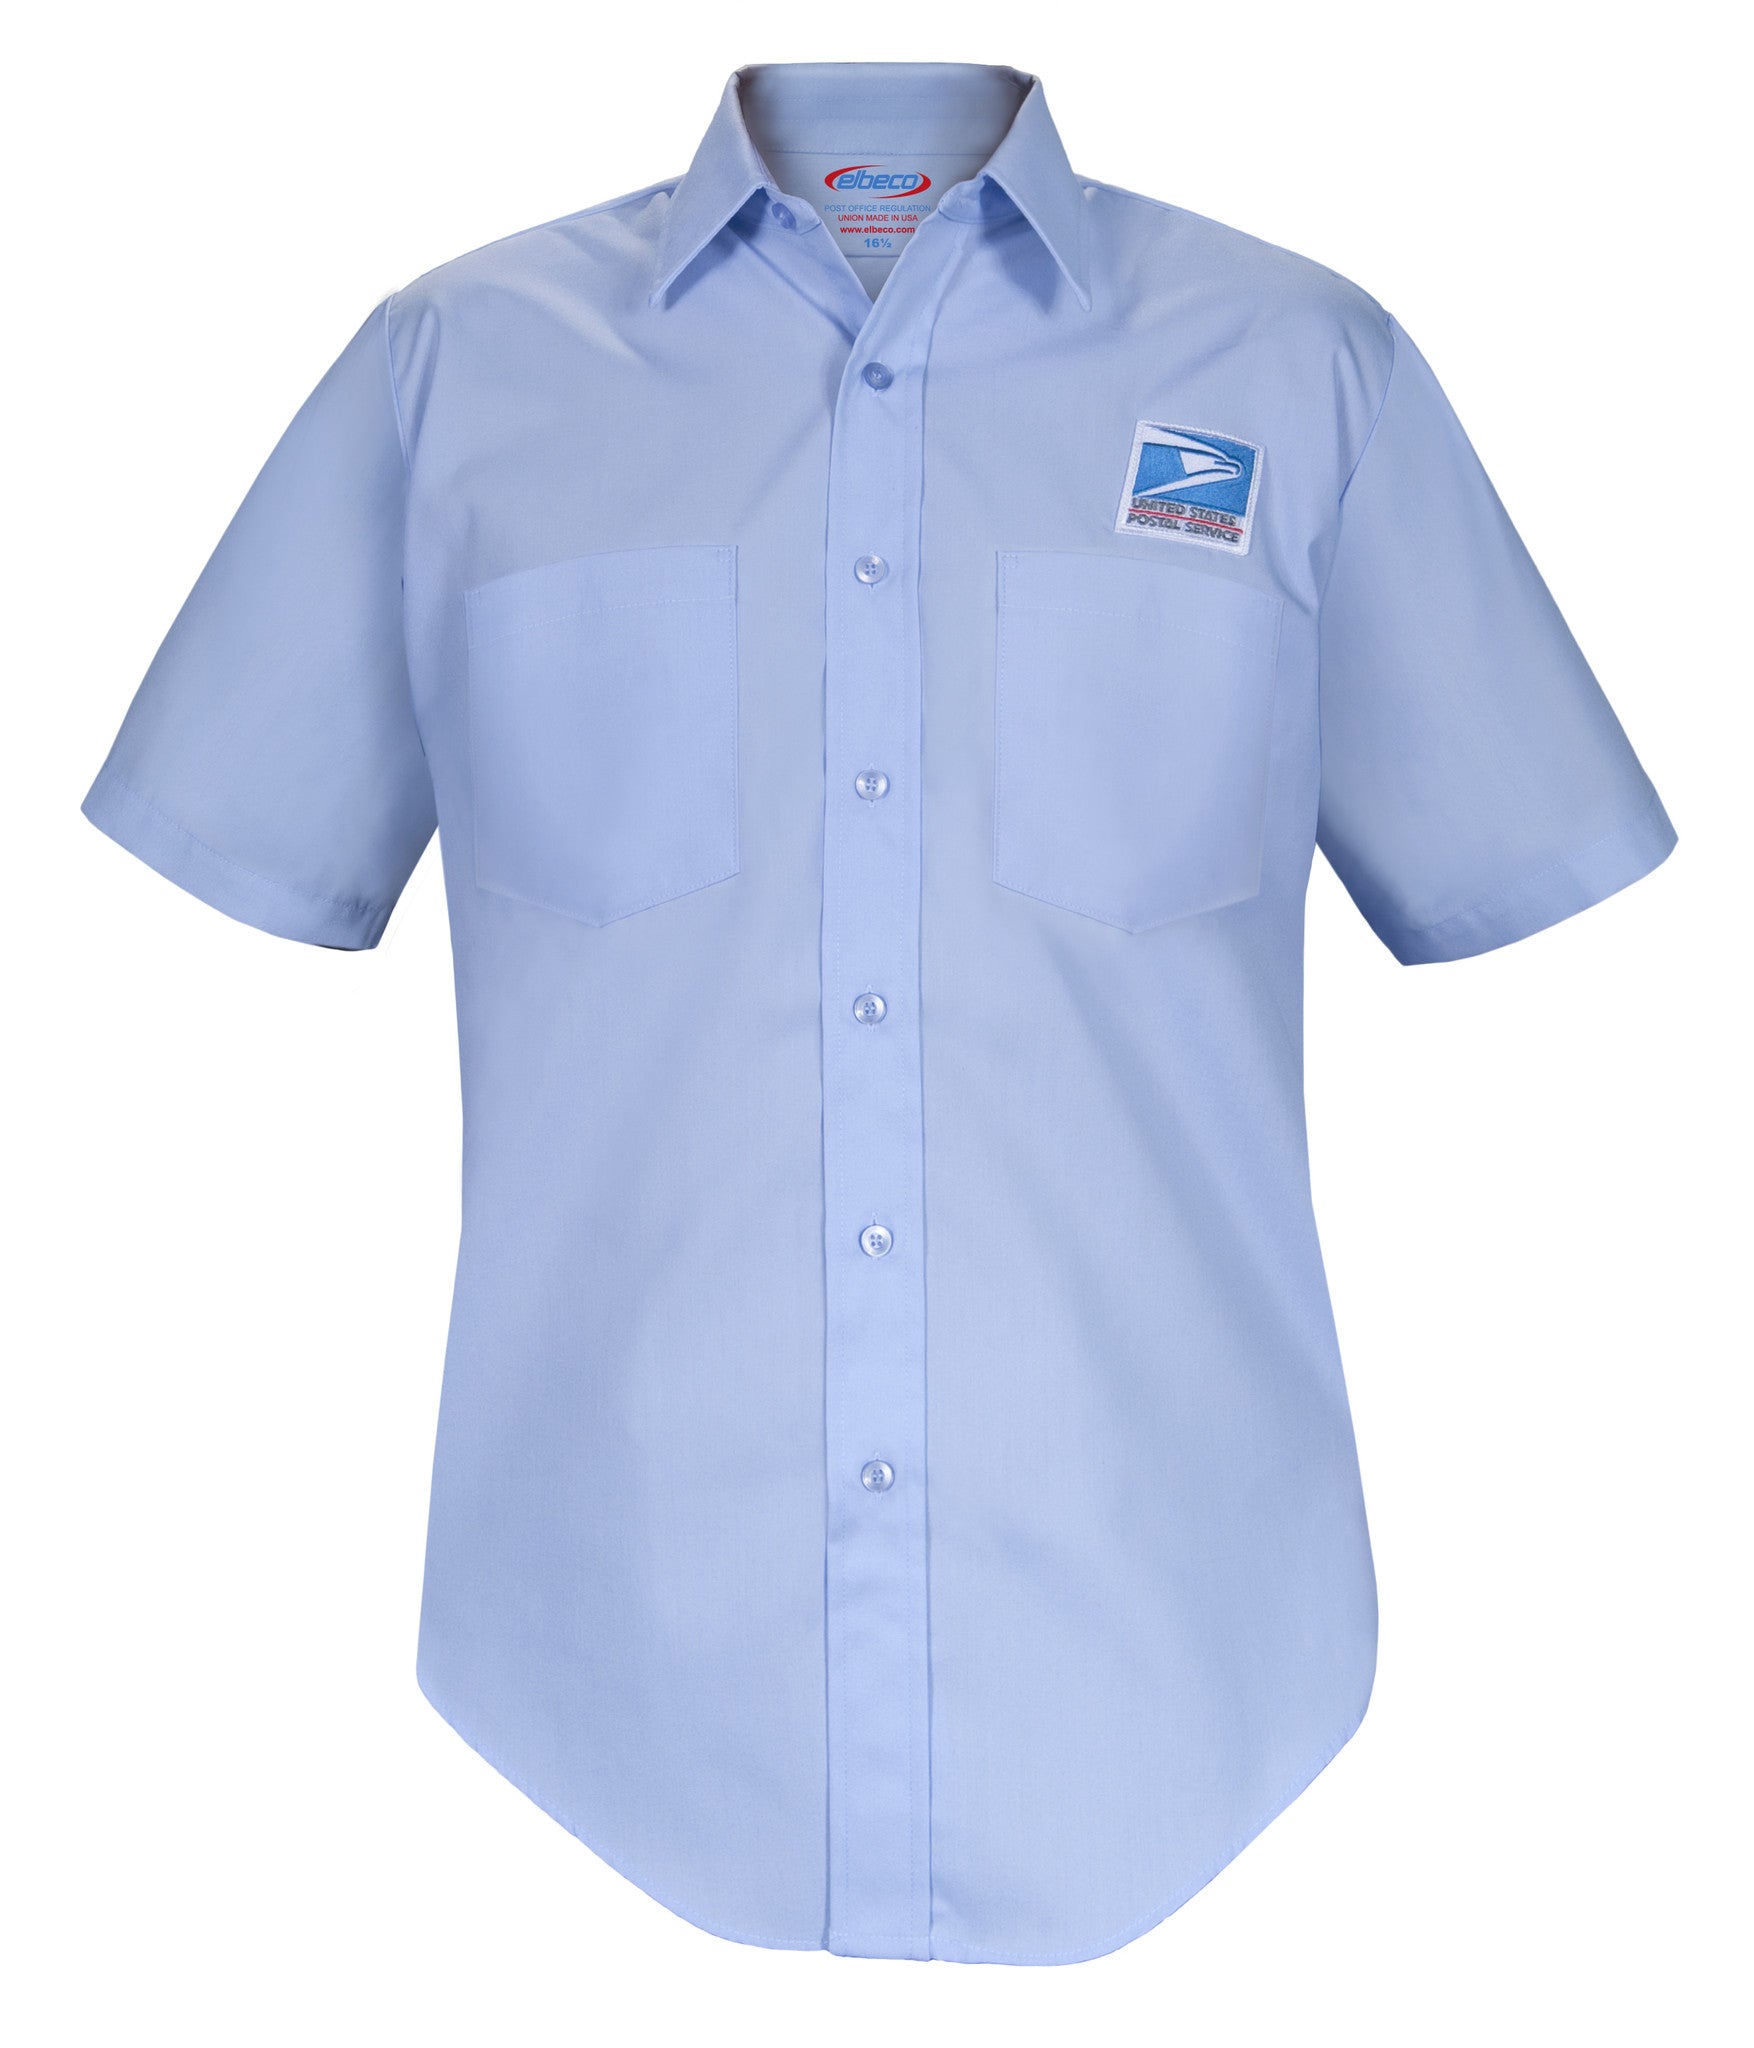 Men's USPS Letter Carrier Short Sleeve Postal Shirts – Postal Uniform Bonus